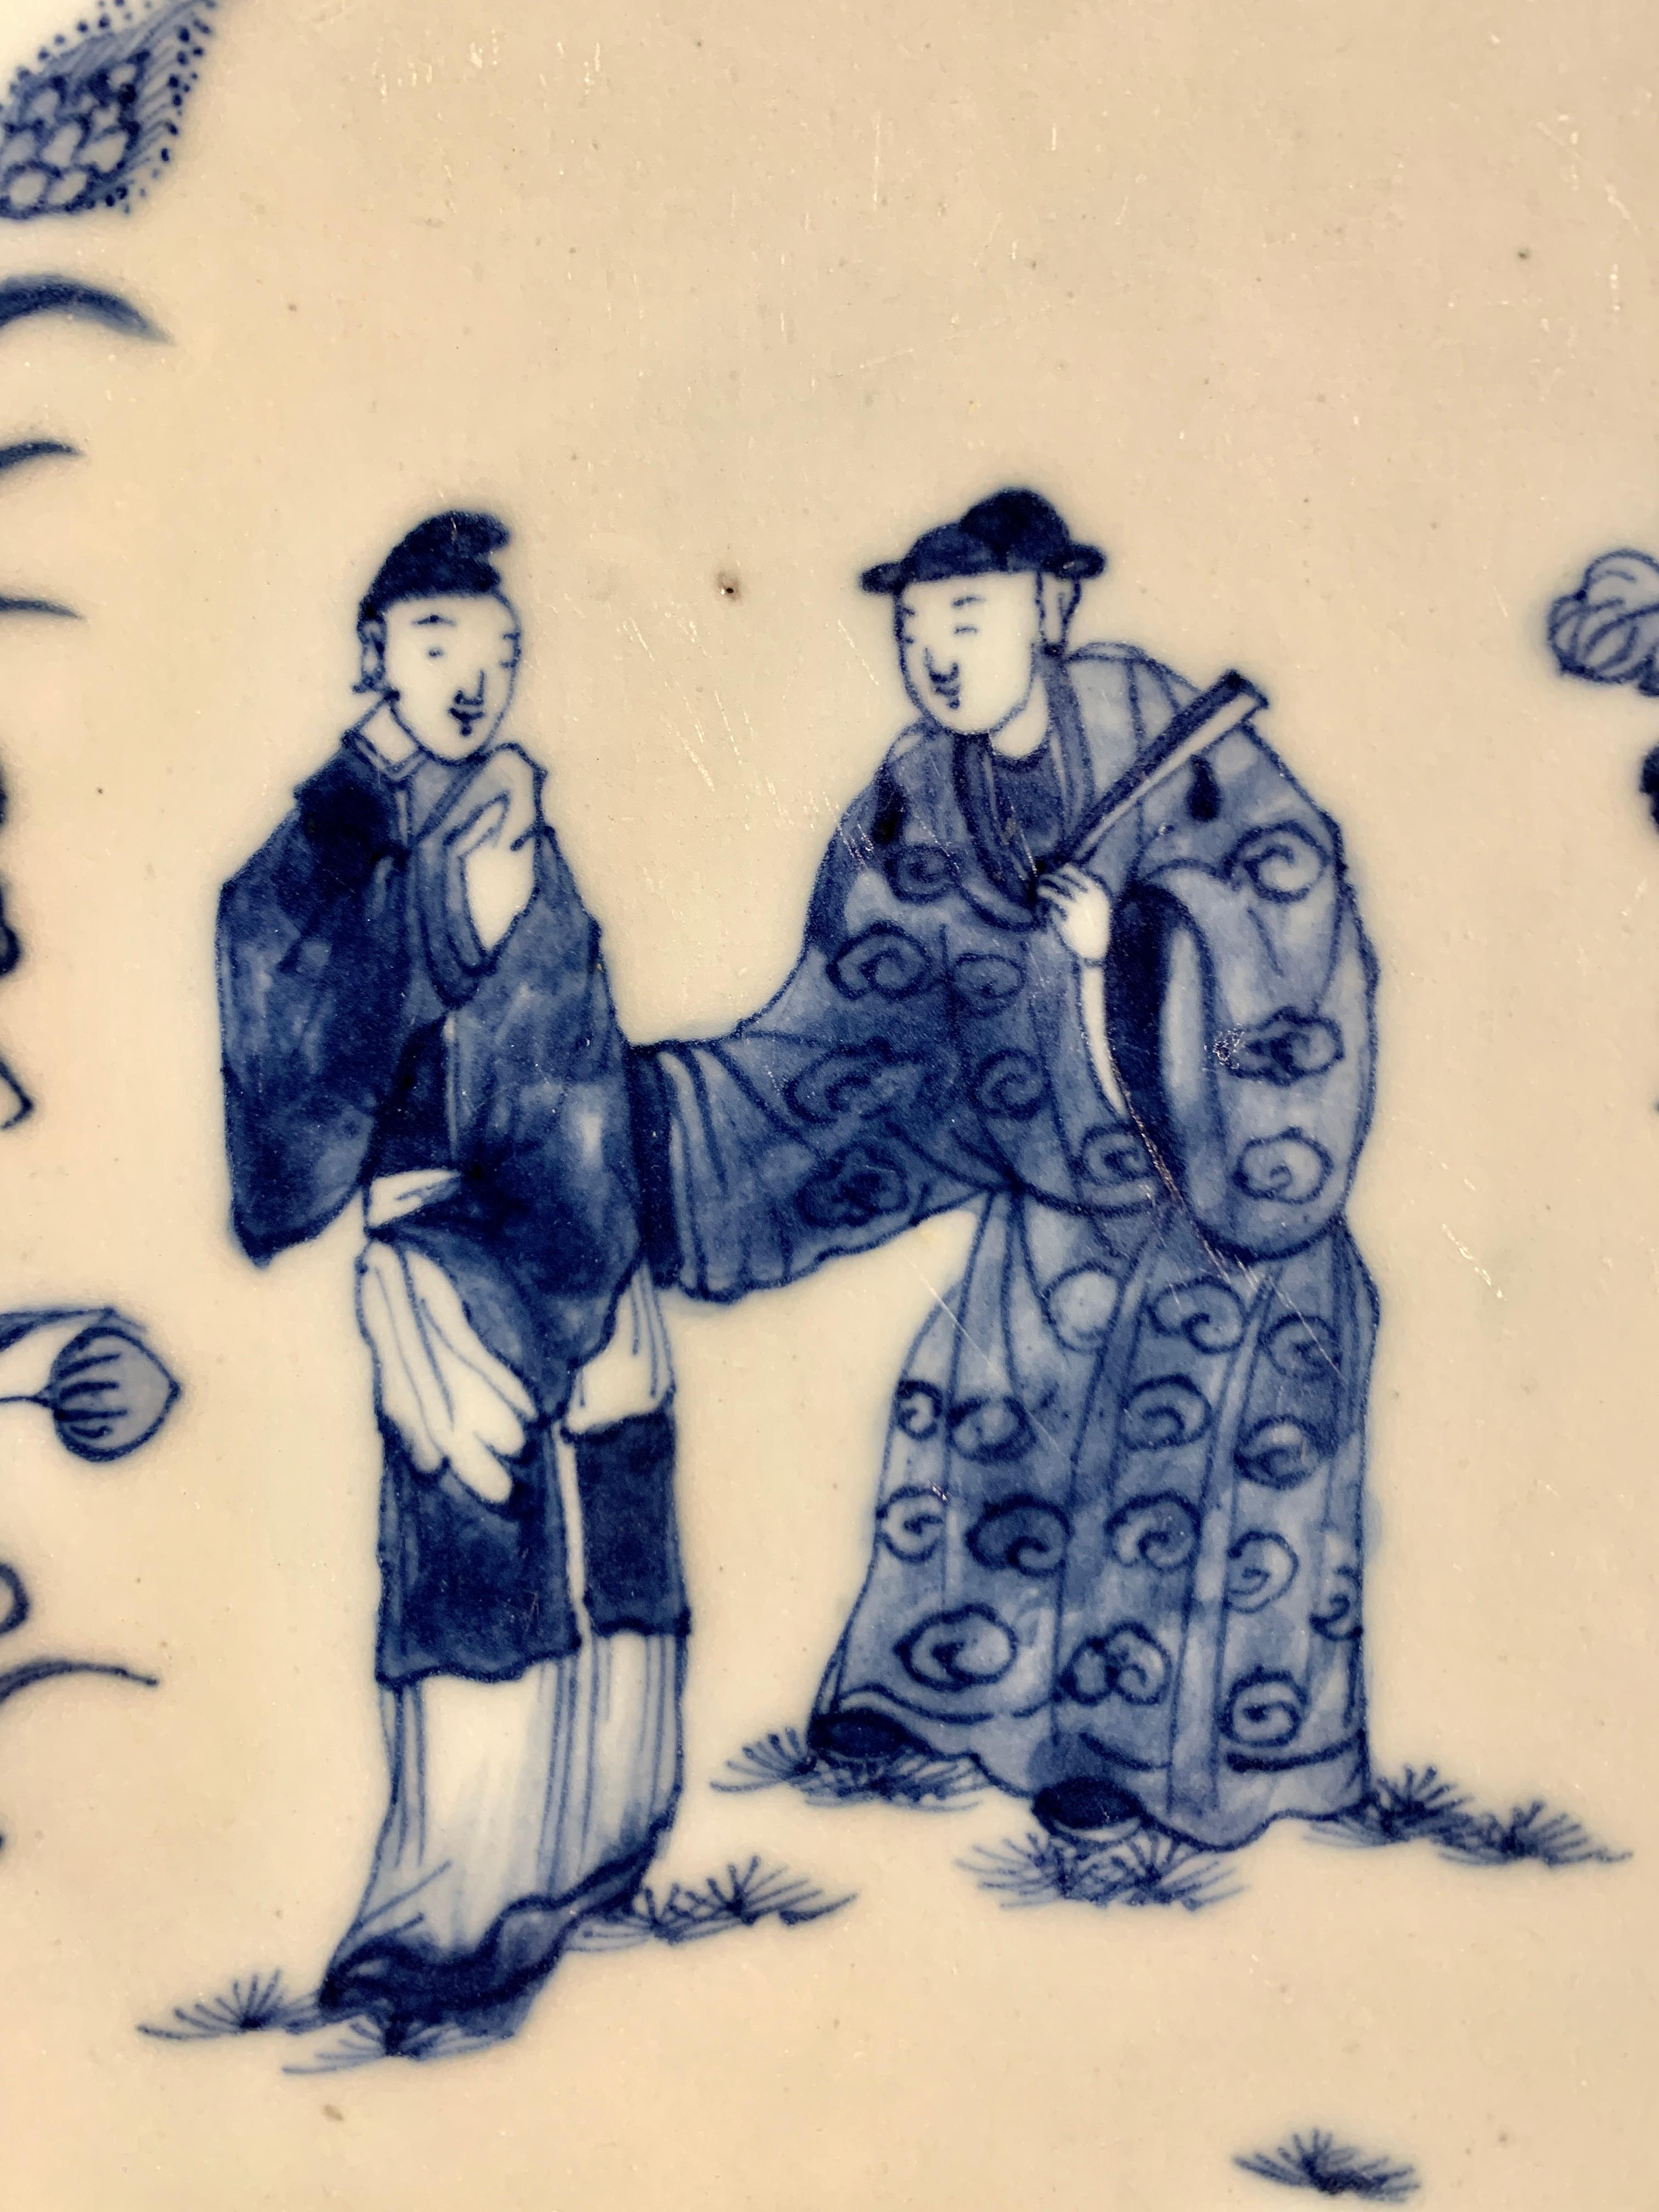 Plat ou chargeur en forme de feuille en porcelaine à décor bleu et blanc, période Qianlong, milieu du XVIIIe siècle, vers 1760, Chine.

Plat ou chargeur de forme intrigante en forme de feuille, aux bords dentelés, et reposant sur un pied court. La